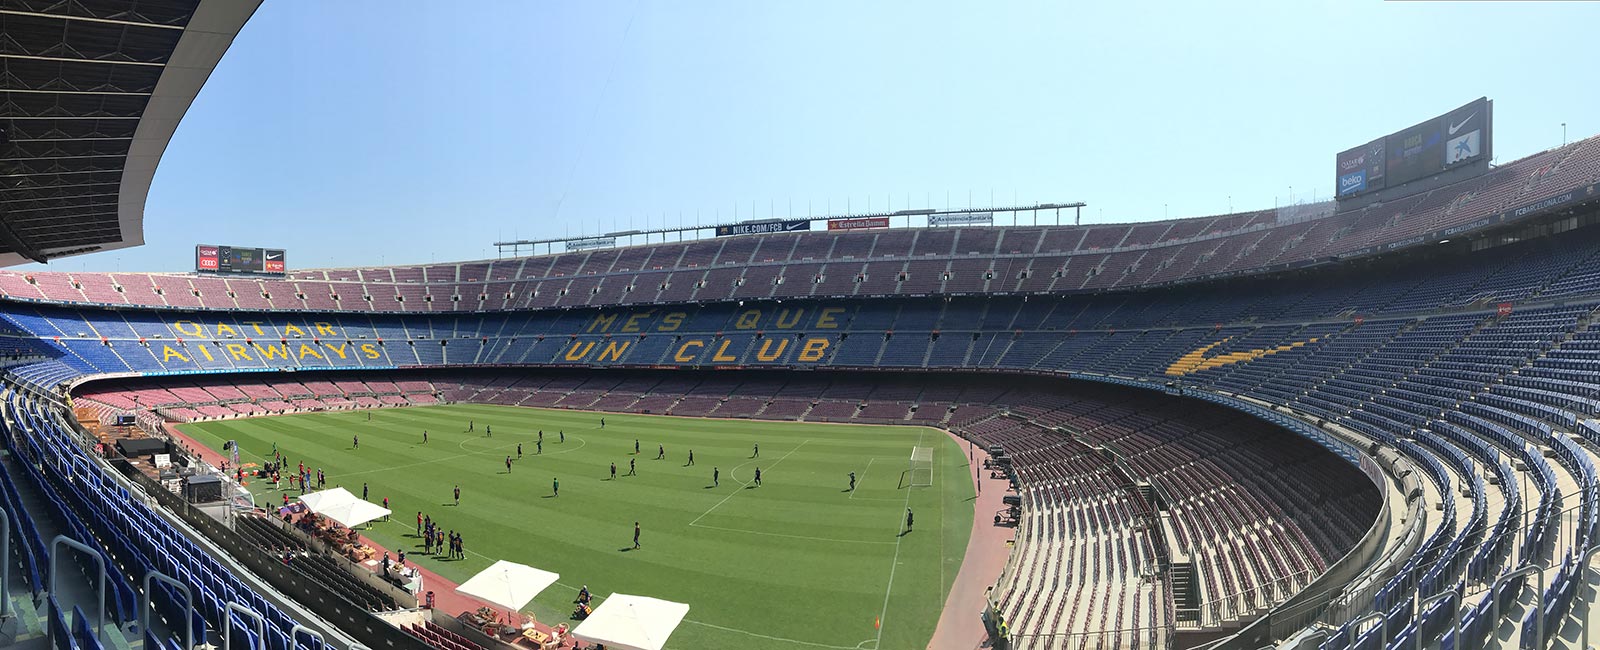 In Camp Nou stadium in Barcelona, Spain. Andorra, Barcelona & Malta